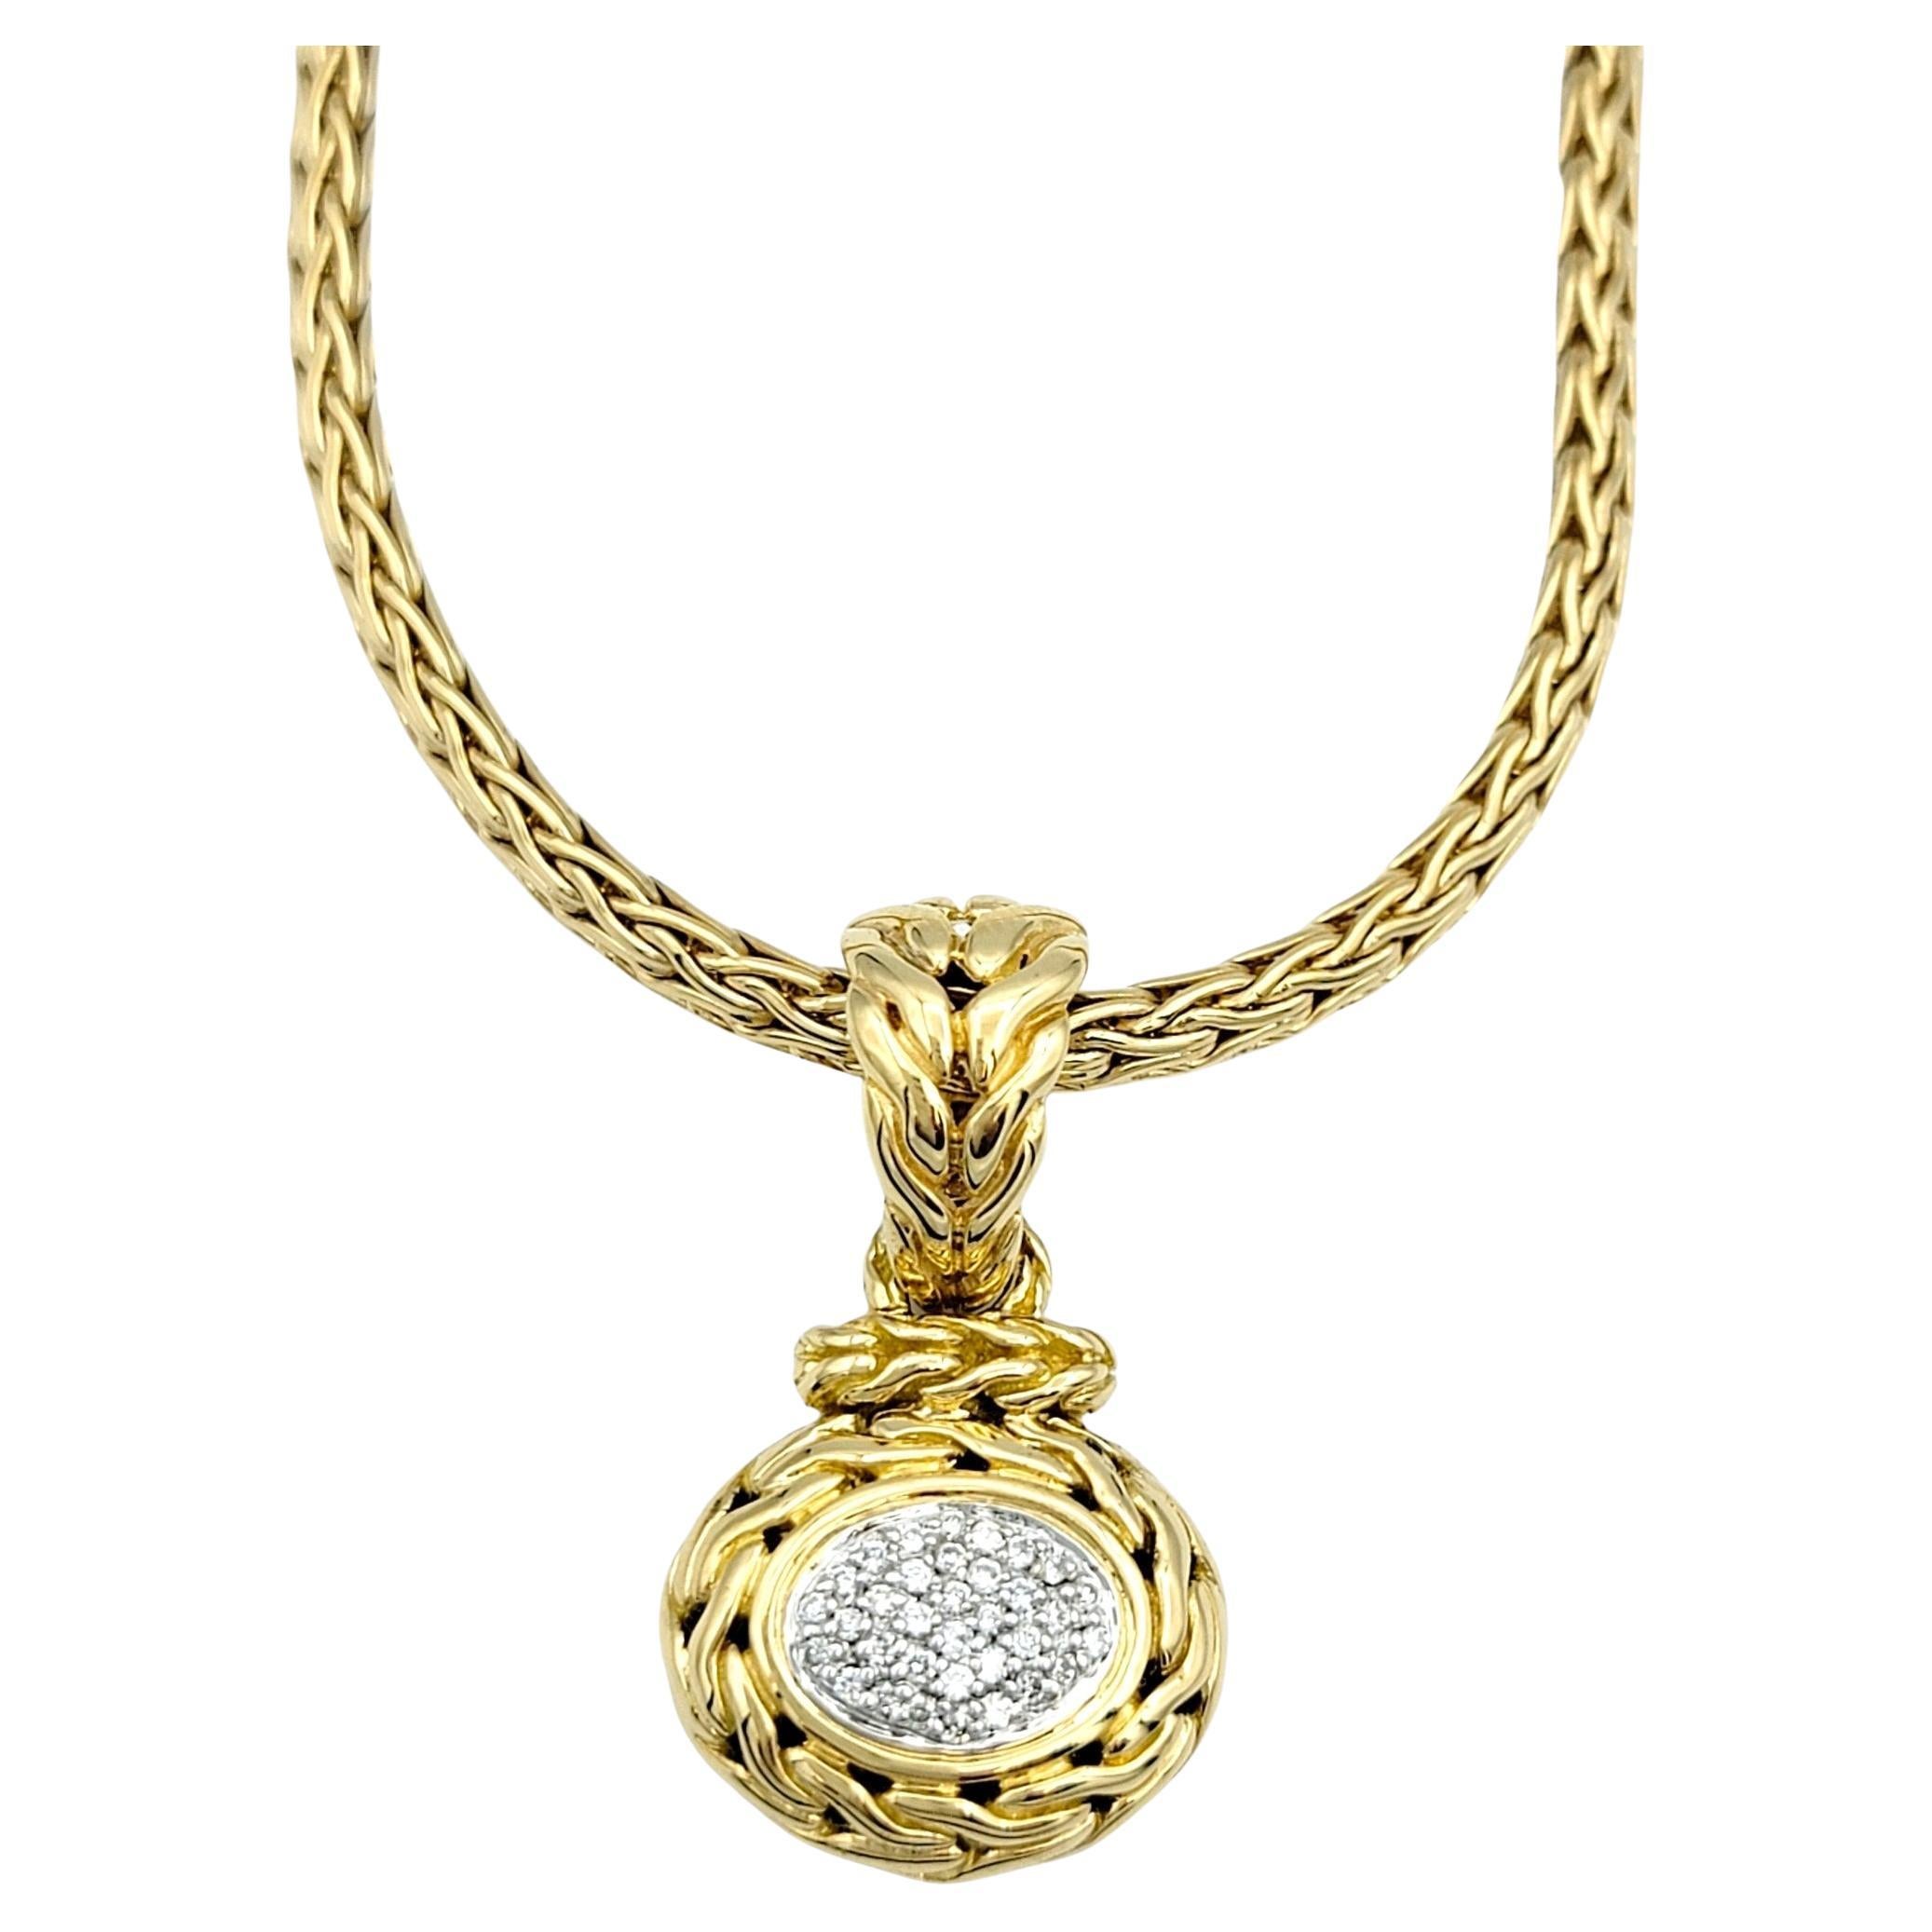 Ce magnifique collier pendentif en diamant pavé John Hardy en or jaune 18 carats est une pièce remarquable qui allie harmonieusement le luxe et le savoir-faire artisanal. Au cœur du collier se trouve un exquis pendentif ovale orné de diamants pavés,